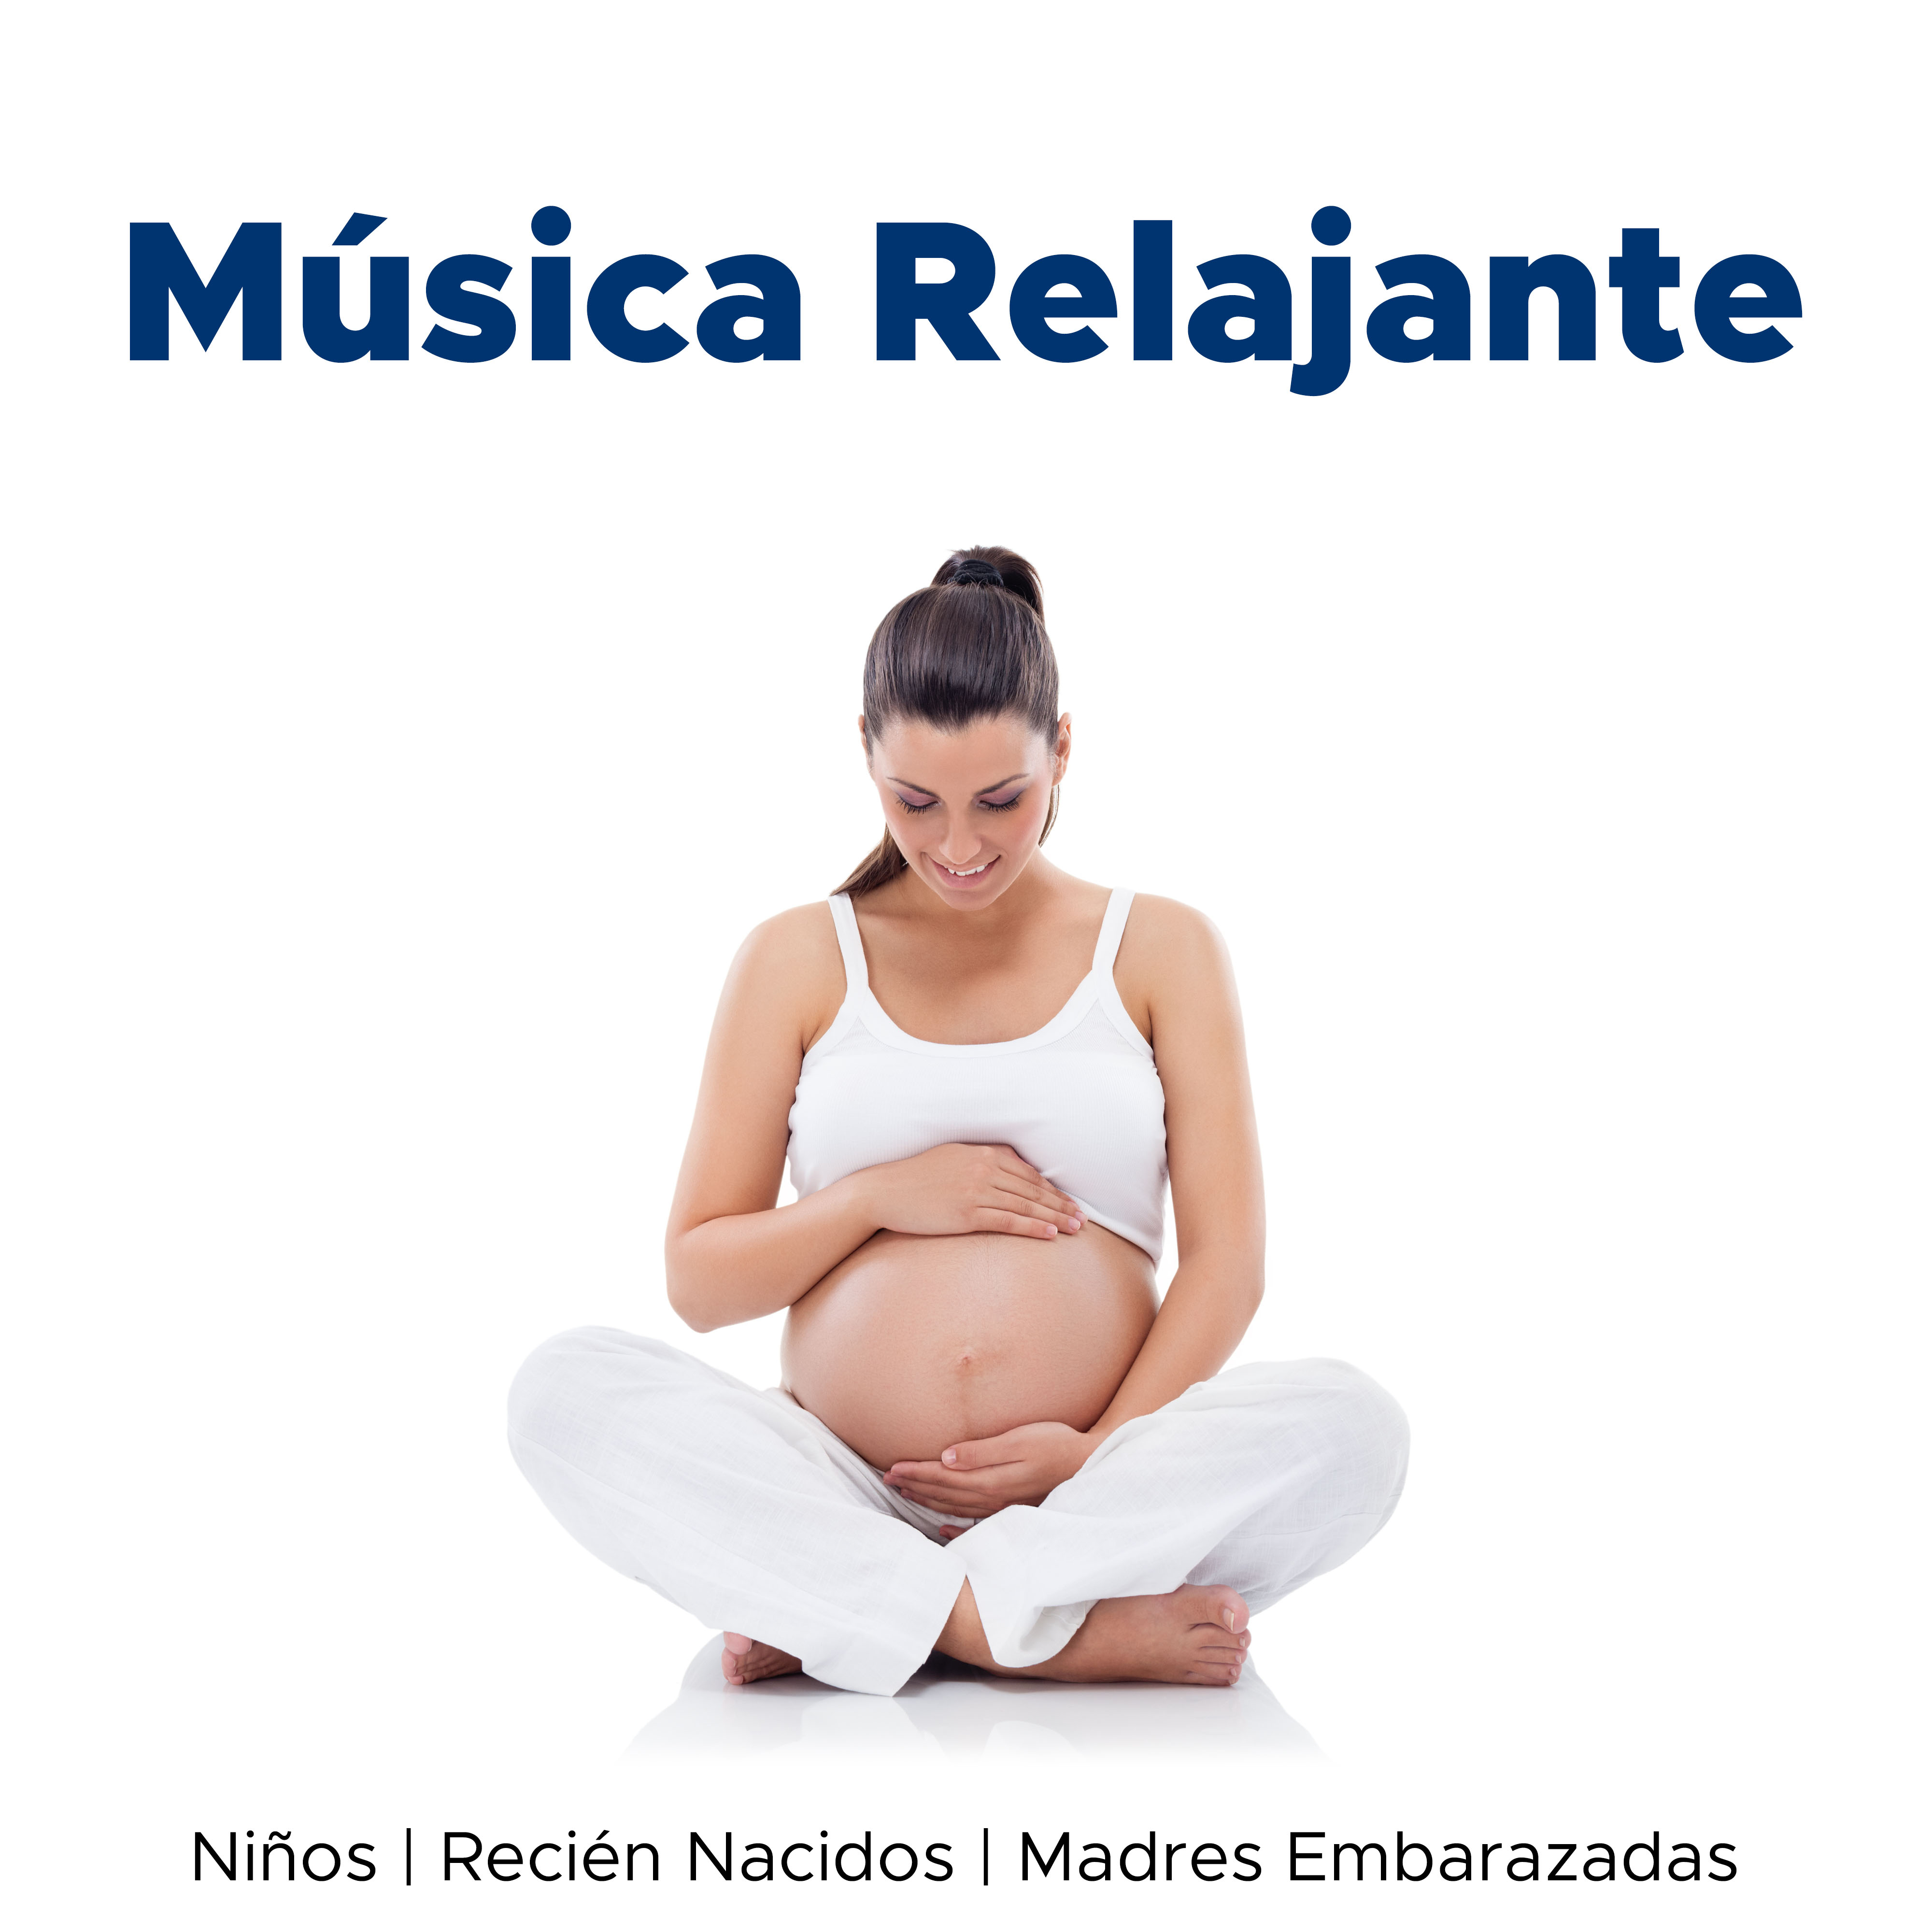 Musica Relajante para Ni os, Recie n Nacidos y Madres Embarazadas